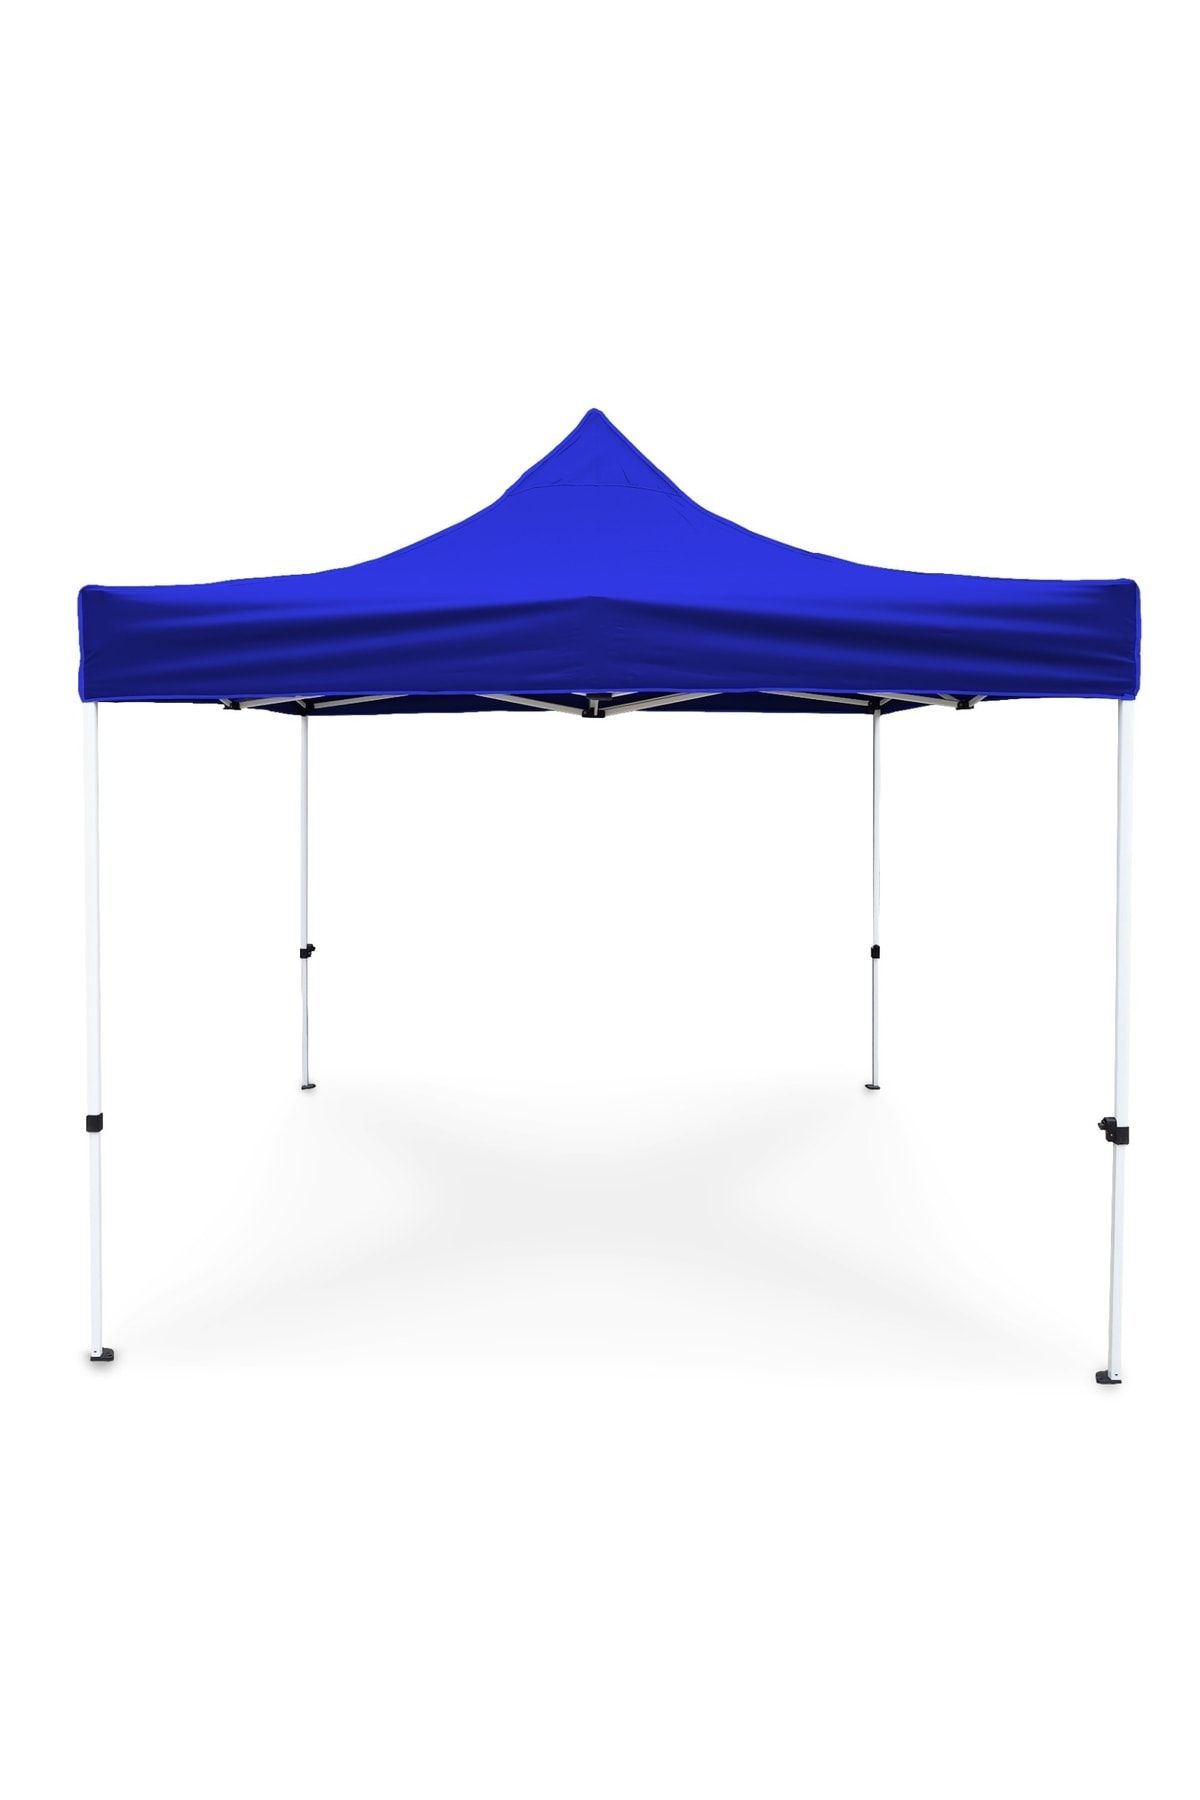 ProKamp Bahçe Çadırı 3x3 Outdoor Çadır Çardak Gazebo 3x3m Gölgelik Tente Fuar Tanıtım Organizasyon Çadırı